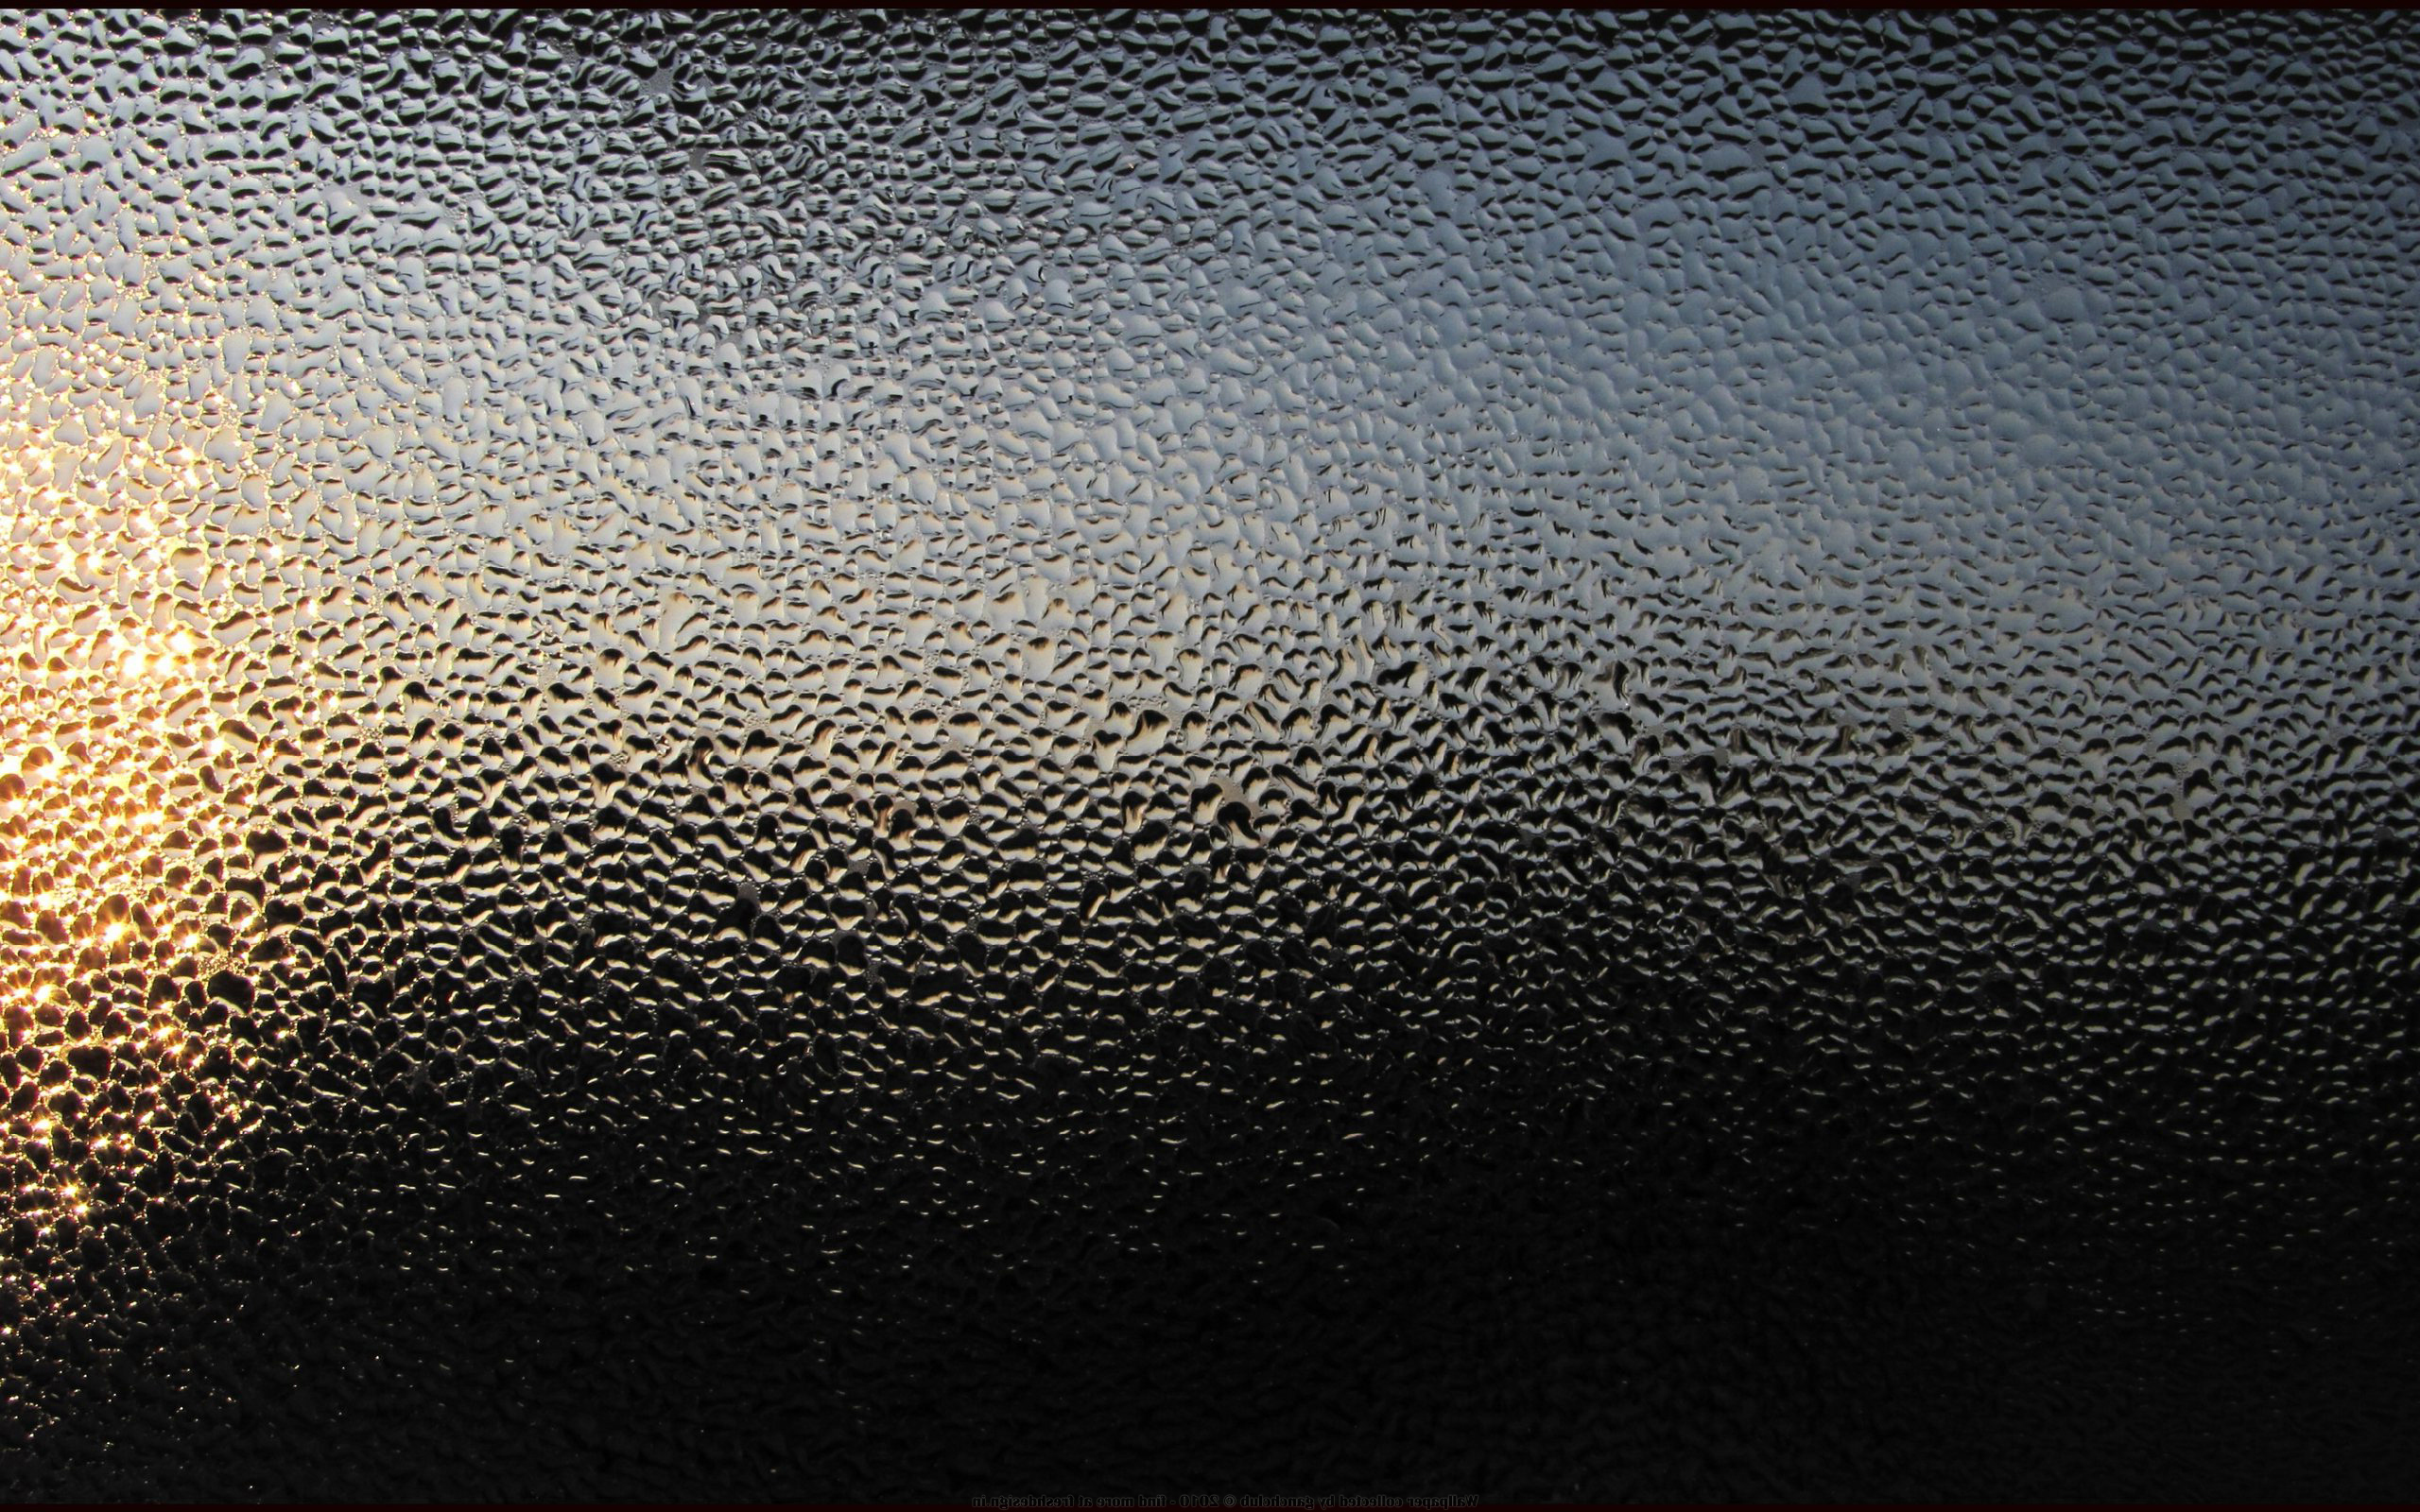 капли воды, конденсация, дождь на стекле - обои на рабочий стол